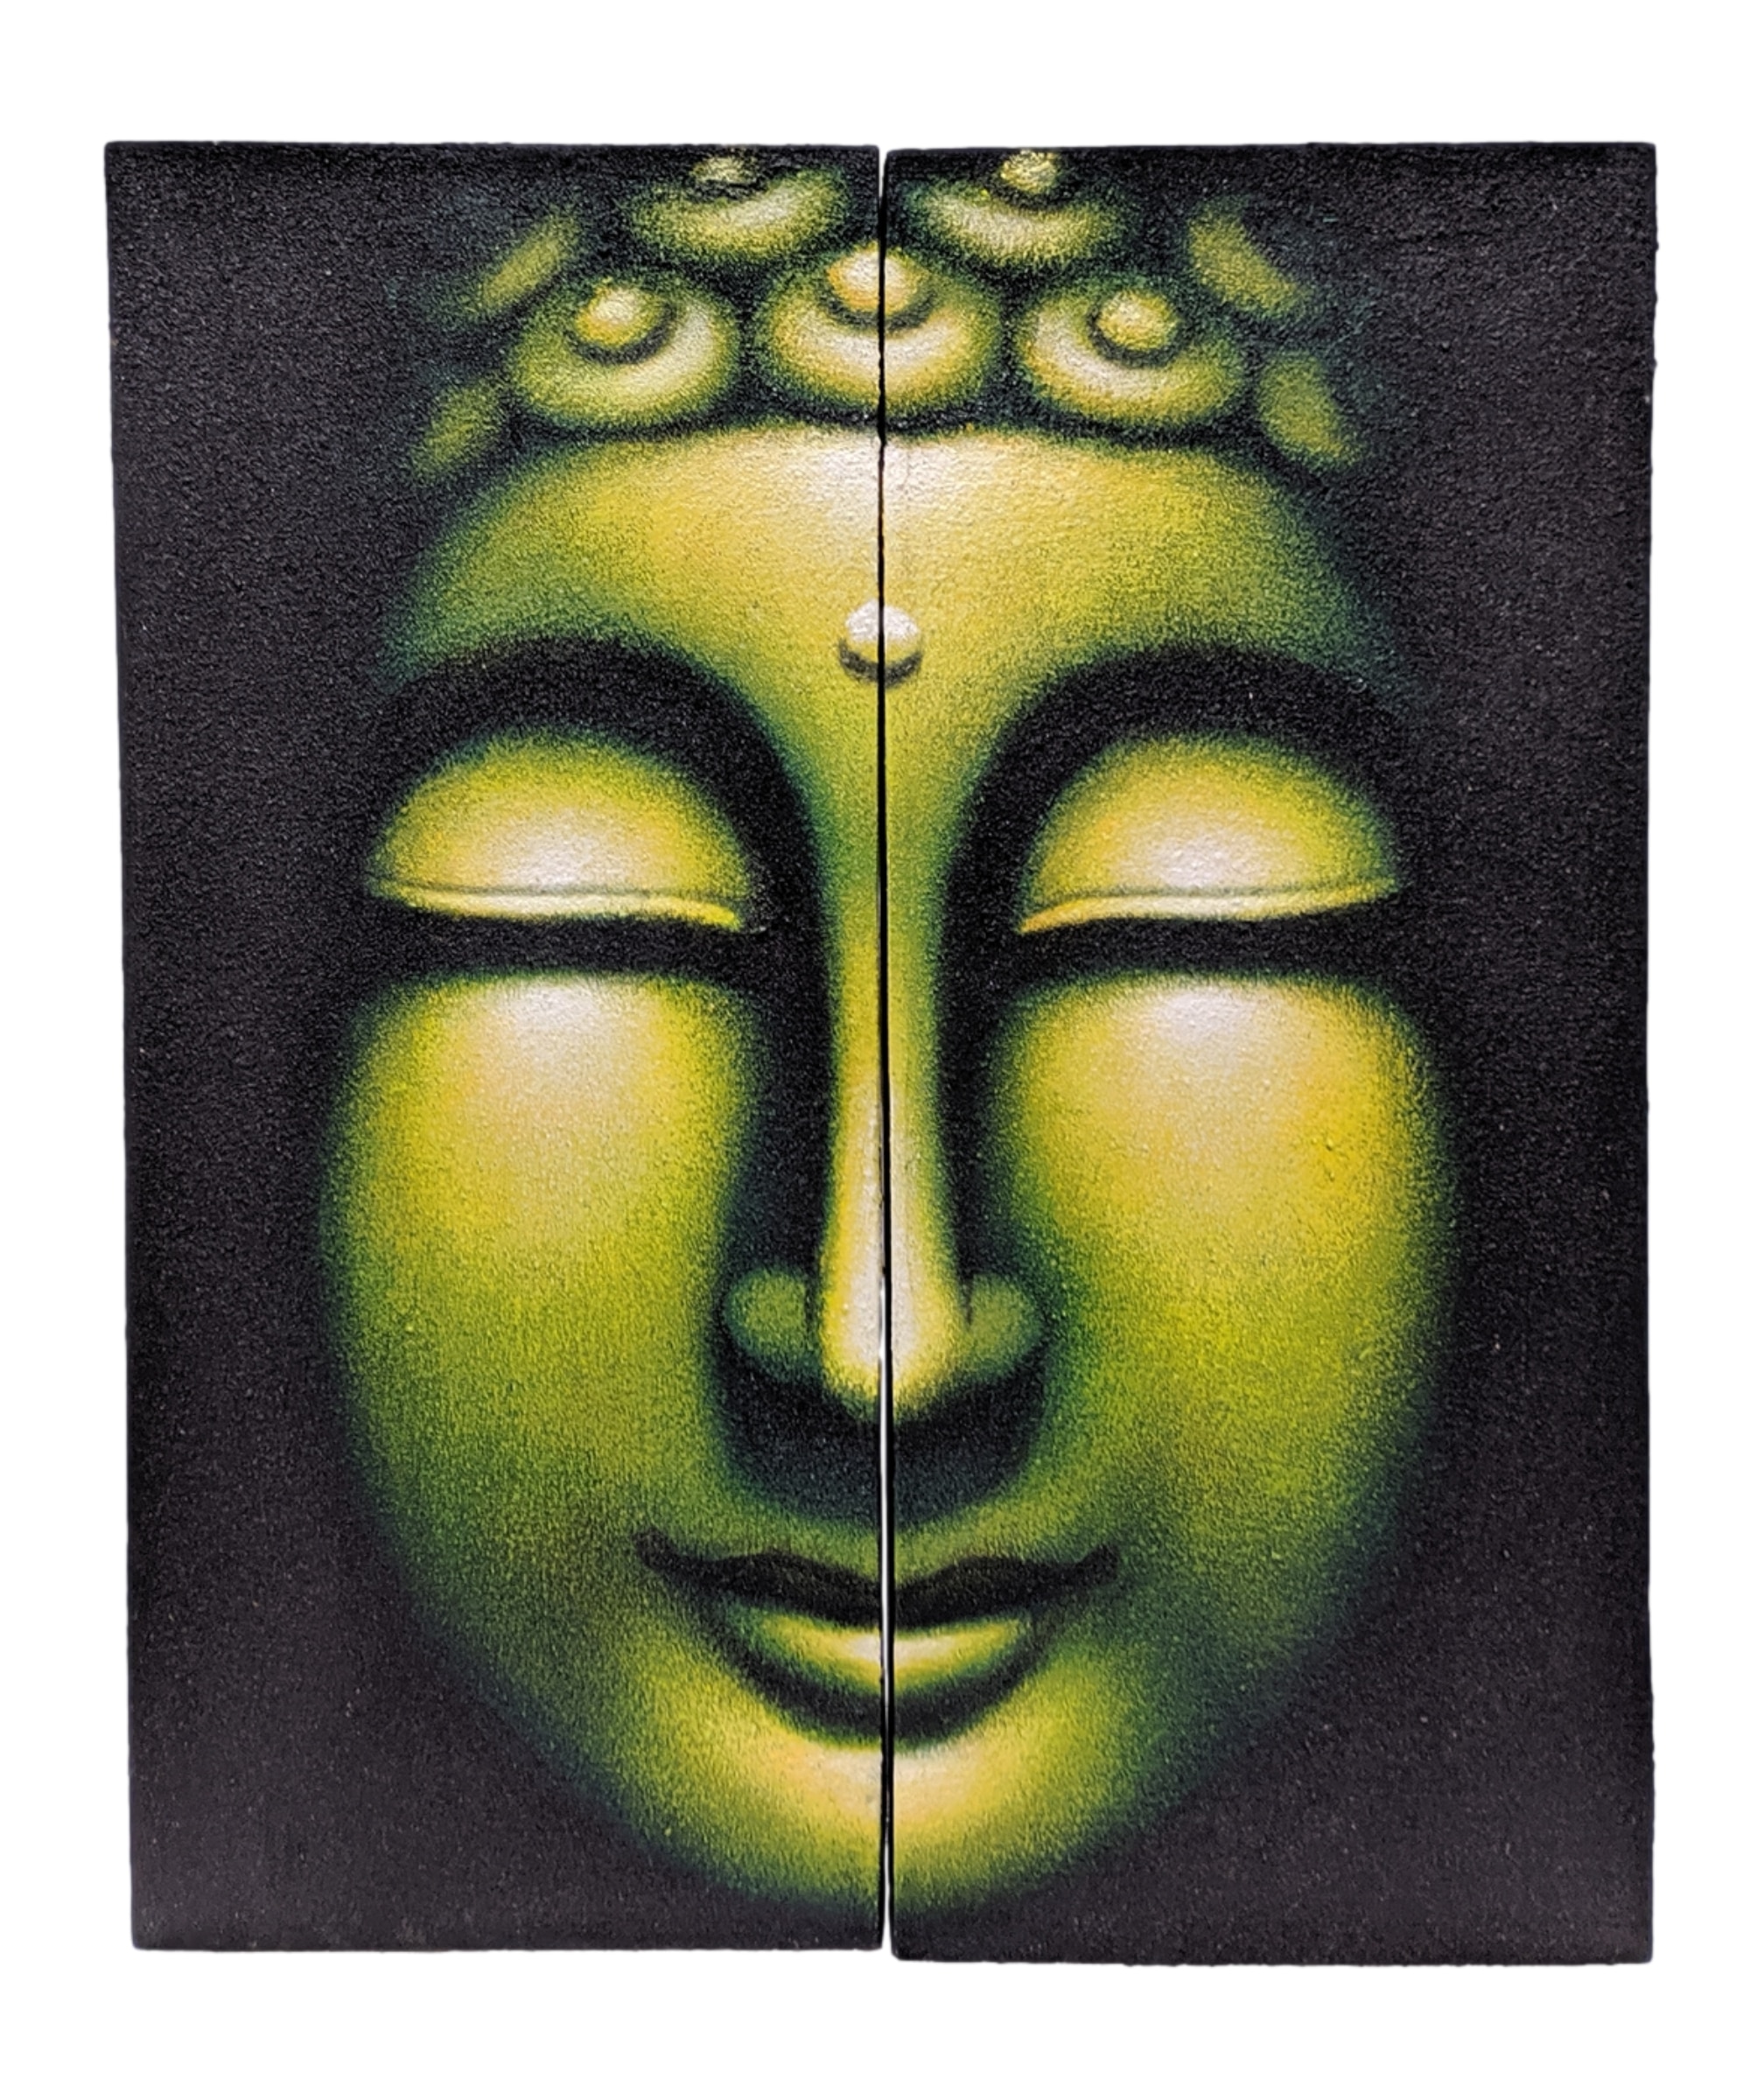 Verslinden nakoming Pas op Schilderij boeddha hoofd wanddecoratie 60 cm groen